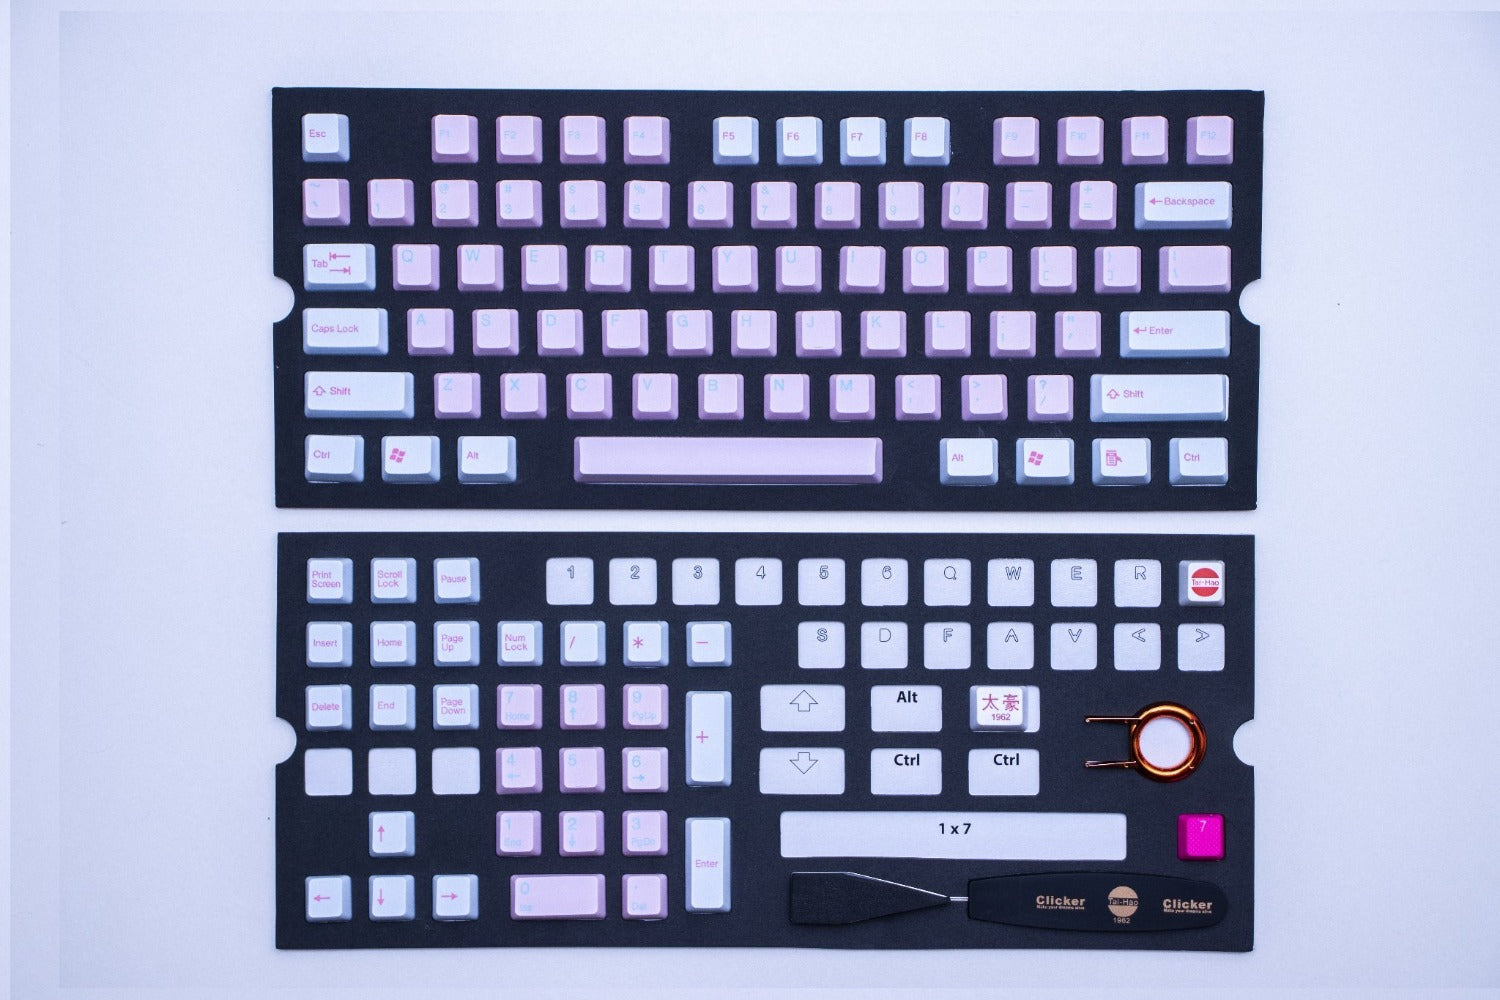 teclado-colores-unicornio-teclado-gamer_Fancy_Customs